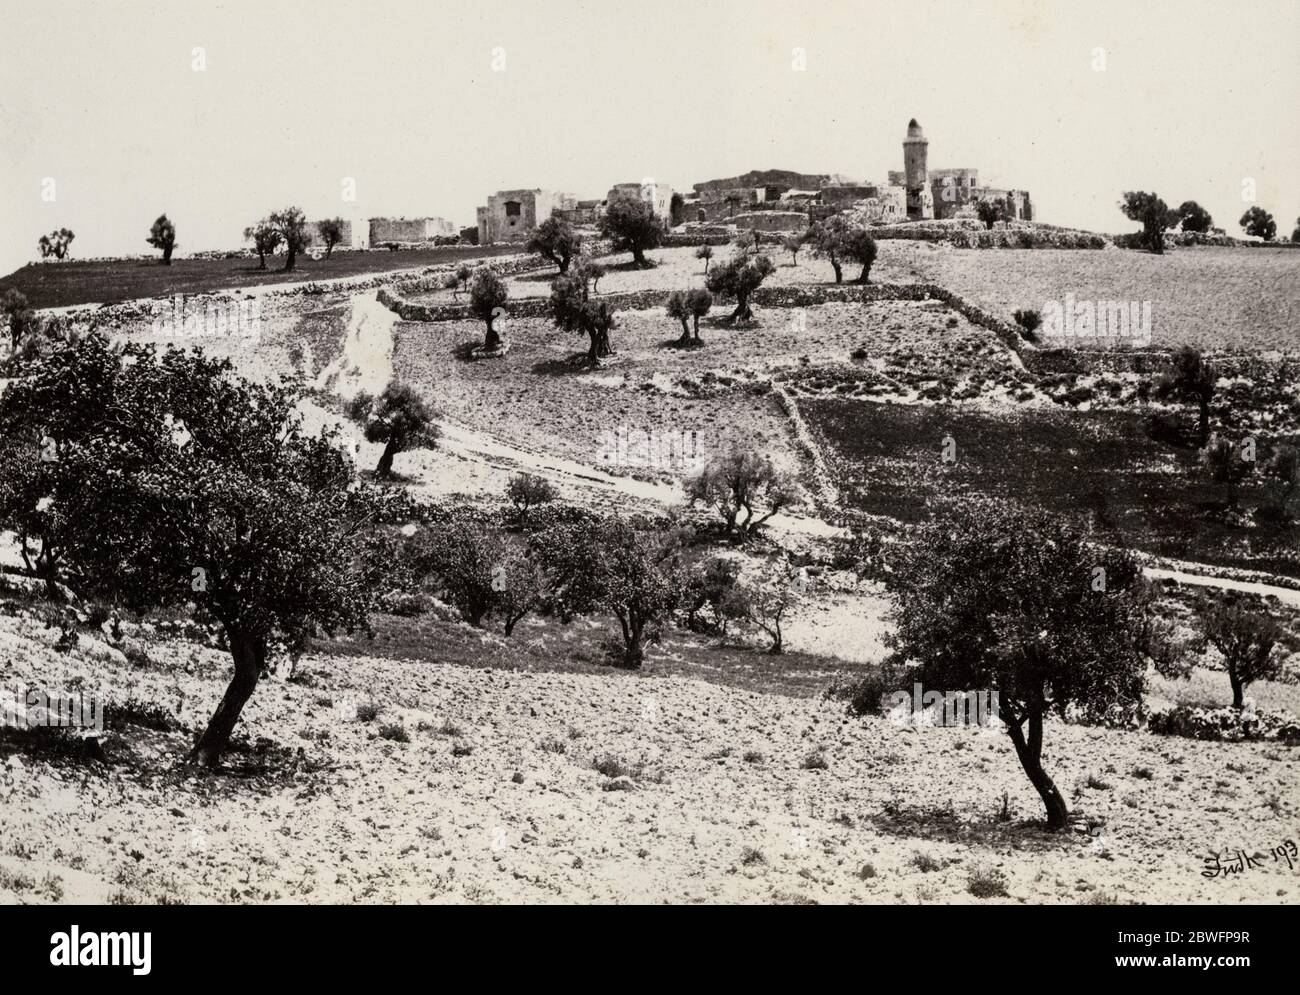 Foto von Francis Frith, von seiner Reise nach Ägypten, Palästina und den weiteren Heiligen Ländern im Jahr 1857 - Kirche der Himmelfahrt, Ölberg, Jerusalem. Stockfoto